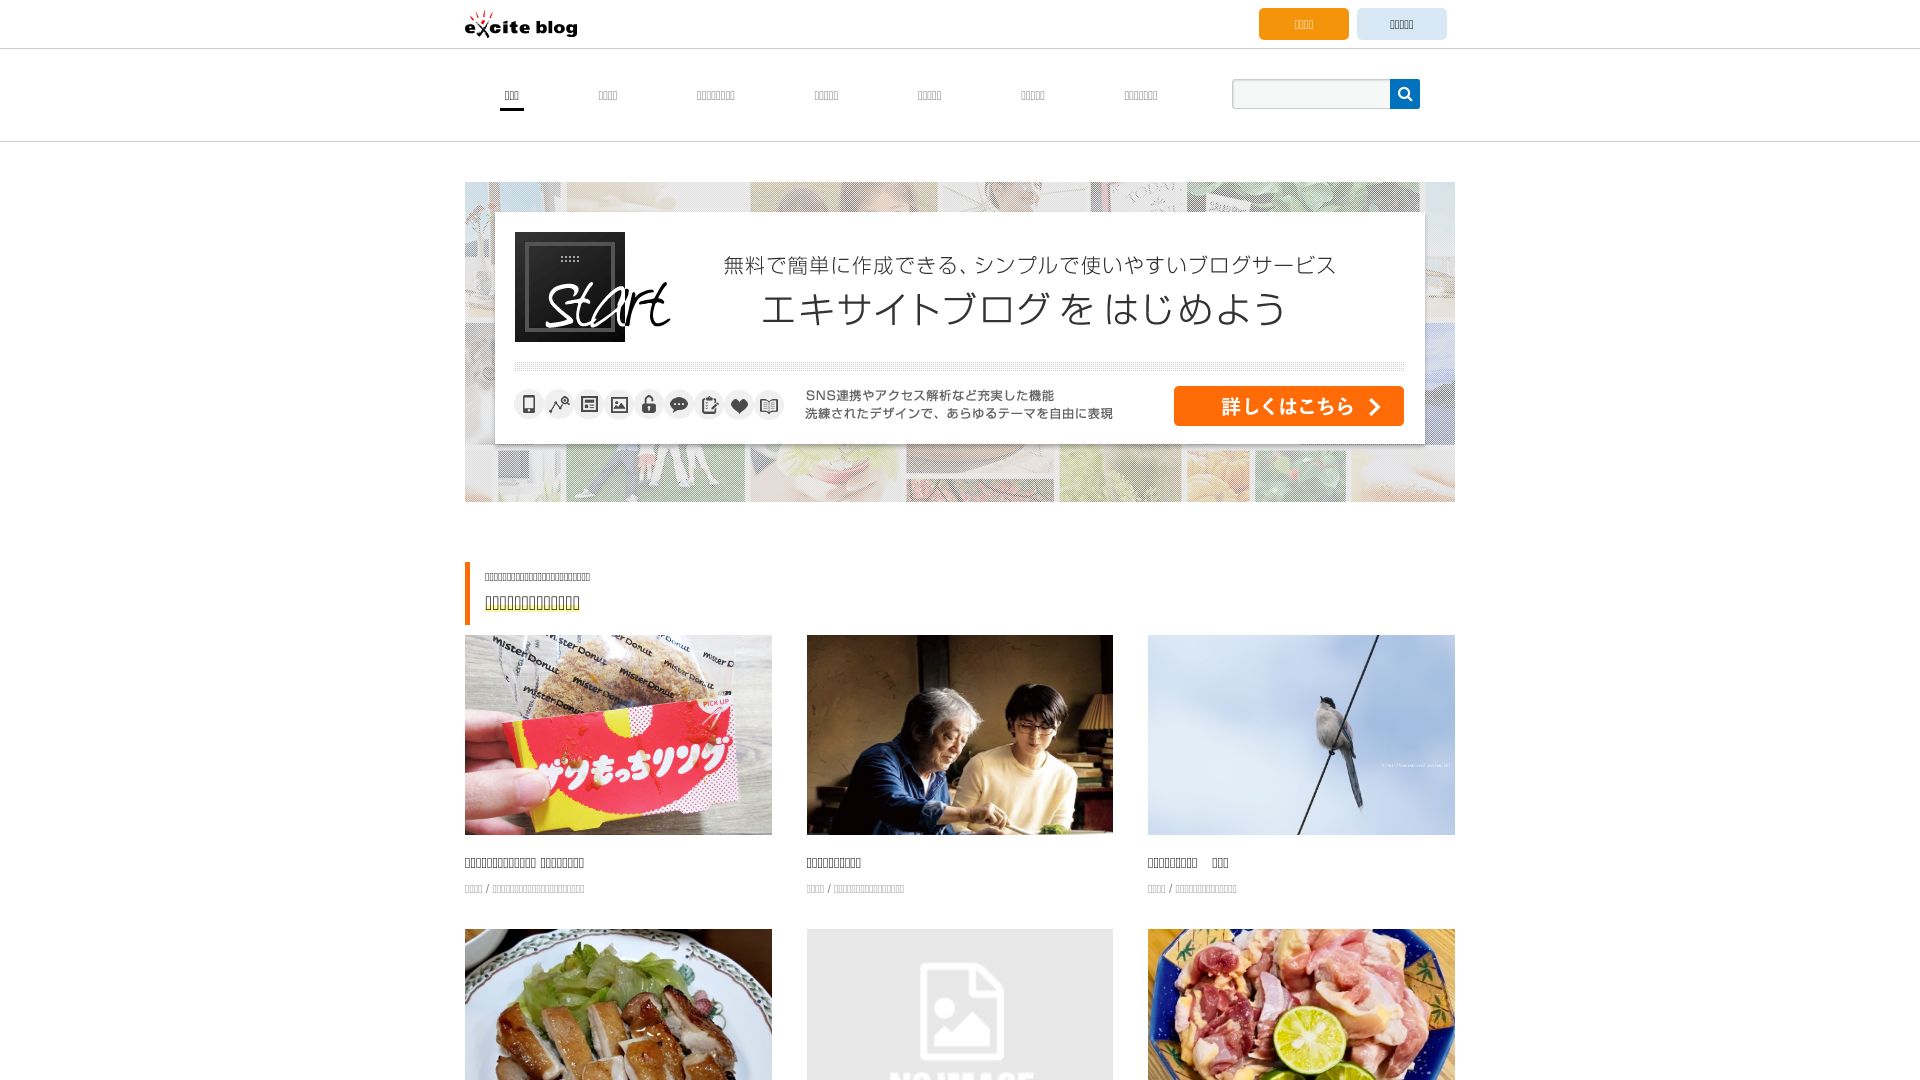 Status do site exblog.jp está   ONLINE